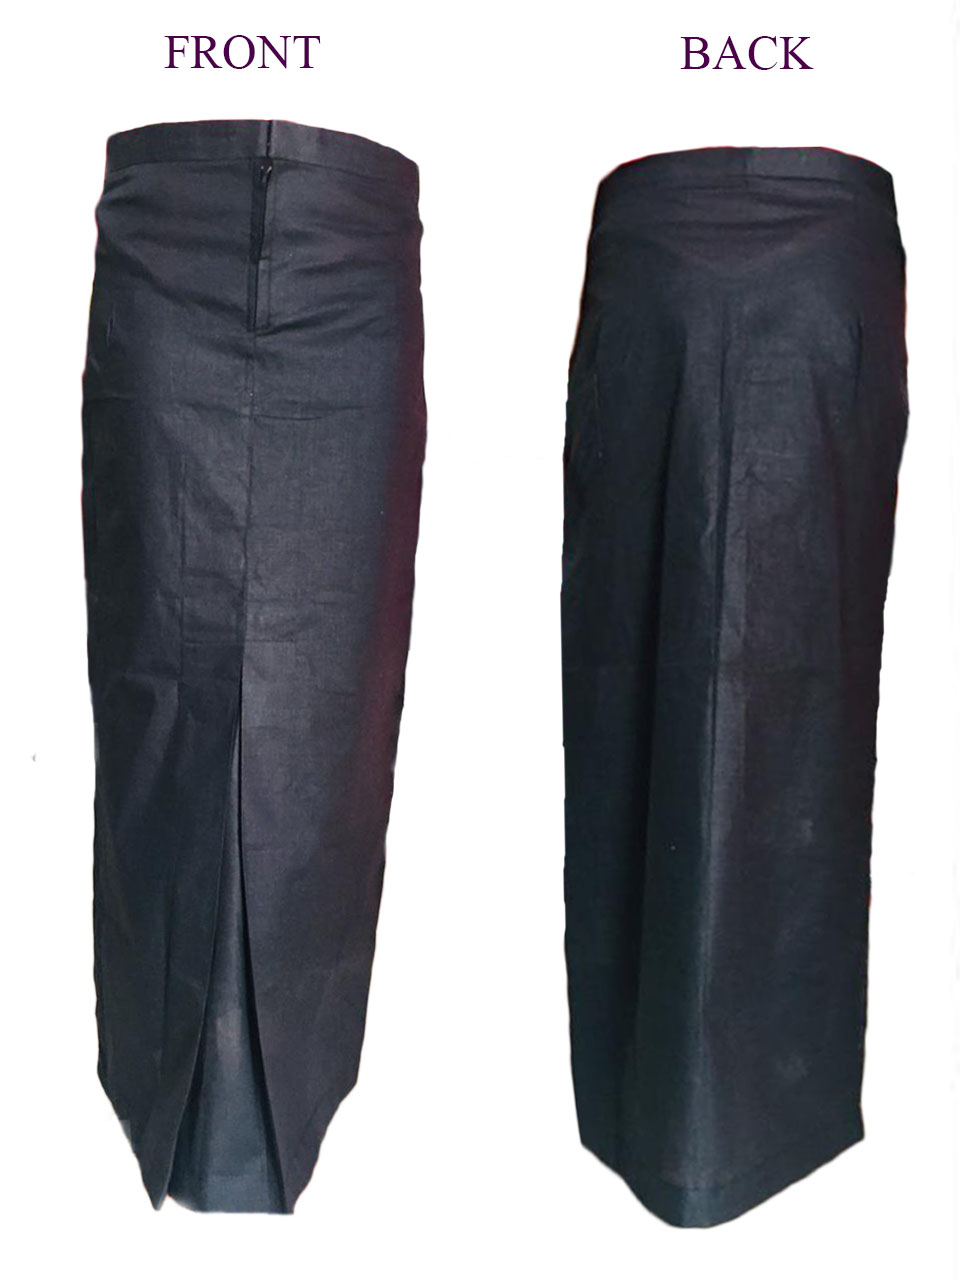 Underskirts for Saree (1pcs) - M / L / XL